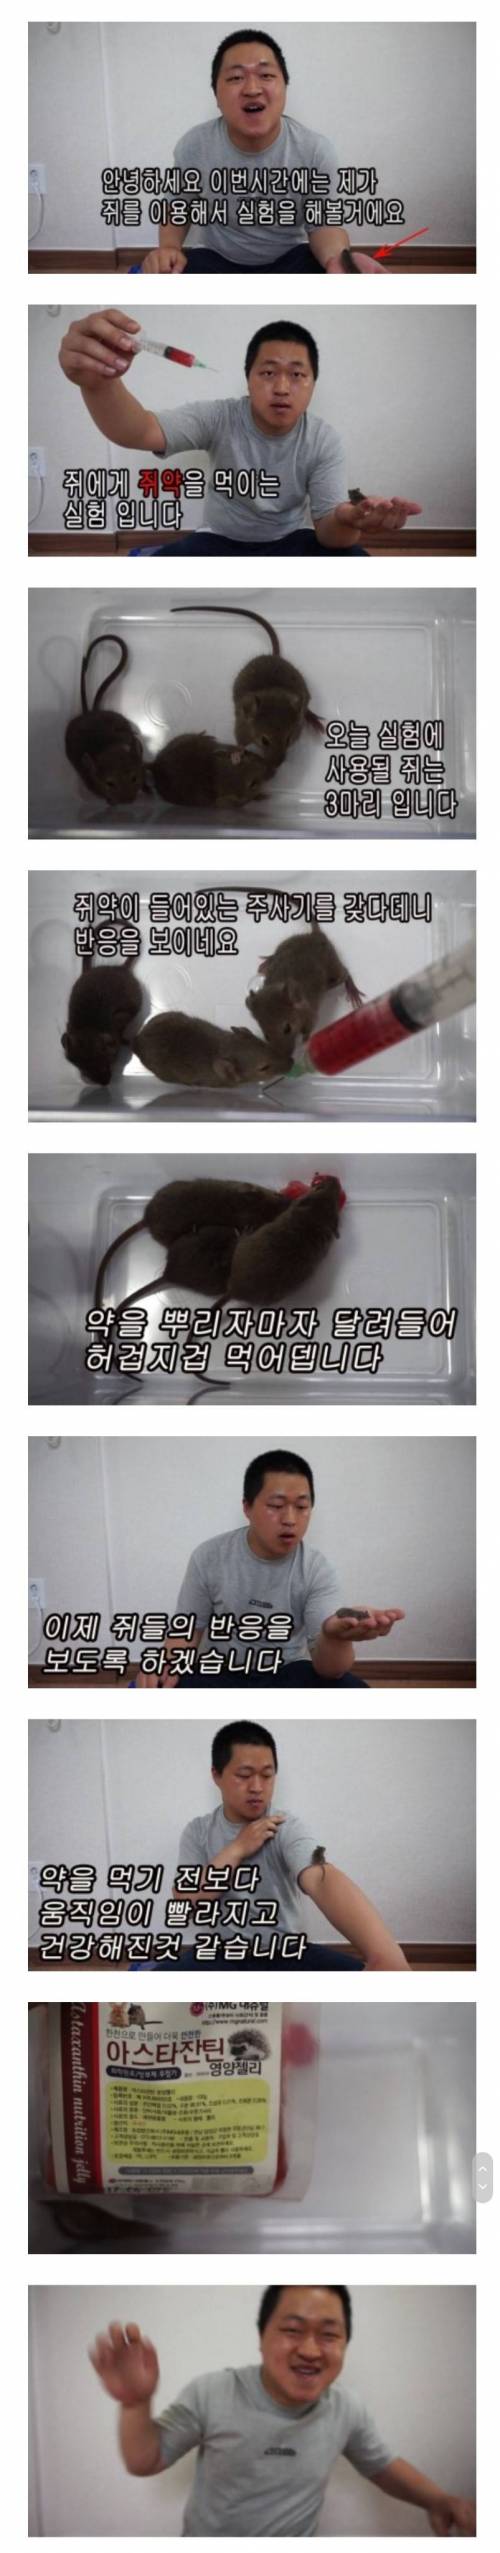 쥐에게 쥐약을 먹이면 나오는 반응...